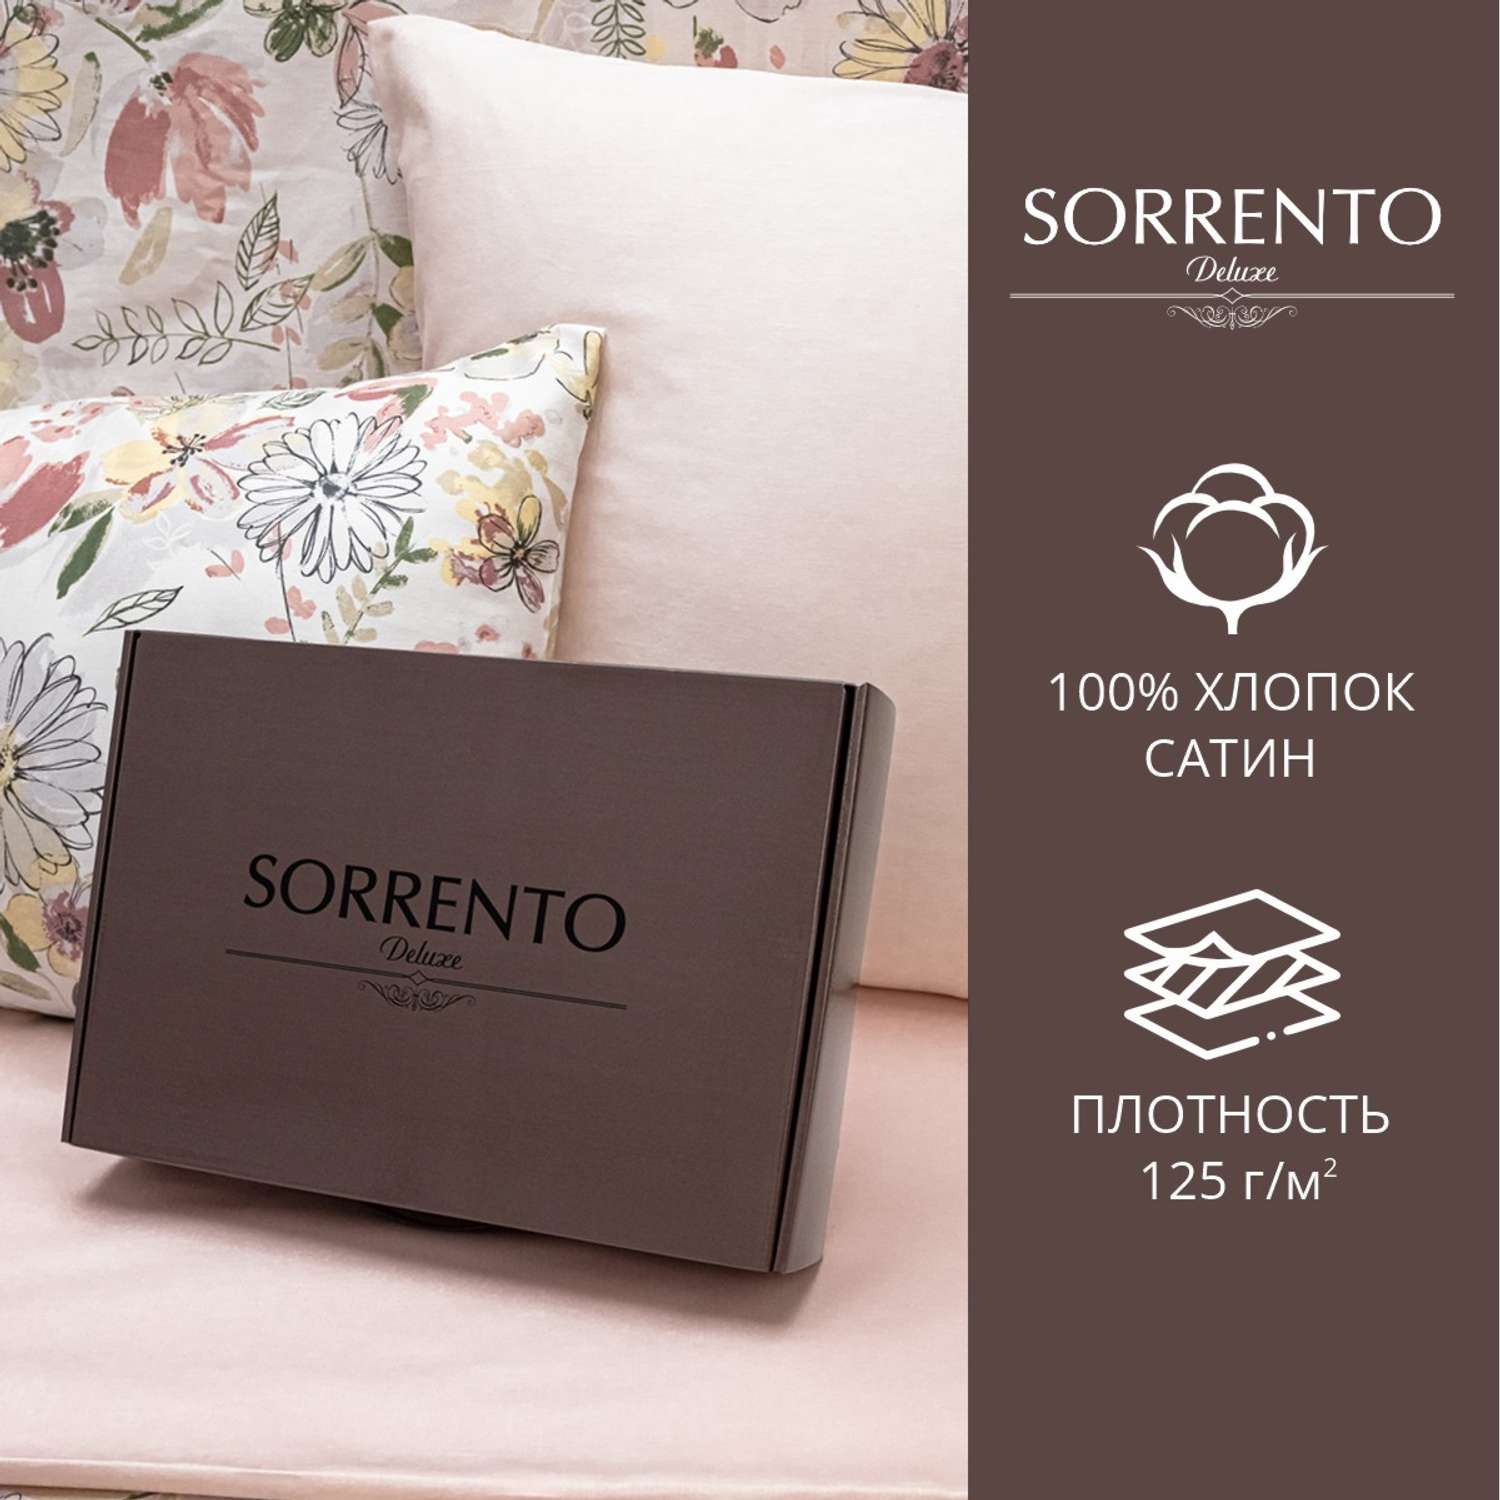 Комплект постельного белья SORRENTO DELUXE Сарита евро 4 наволочки рис.6020-1+4568а-1 - фото 2